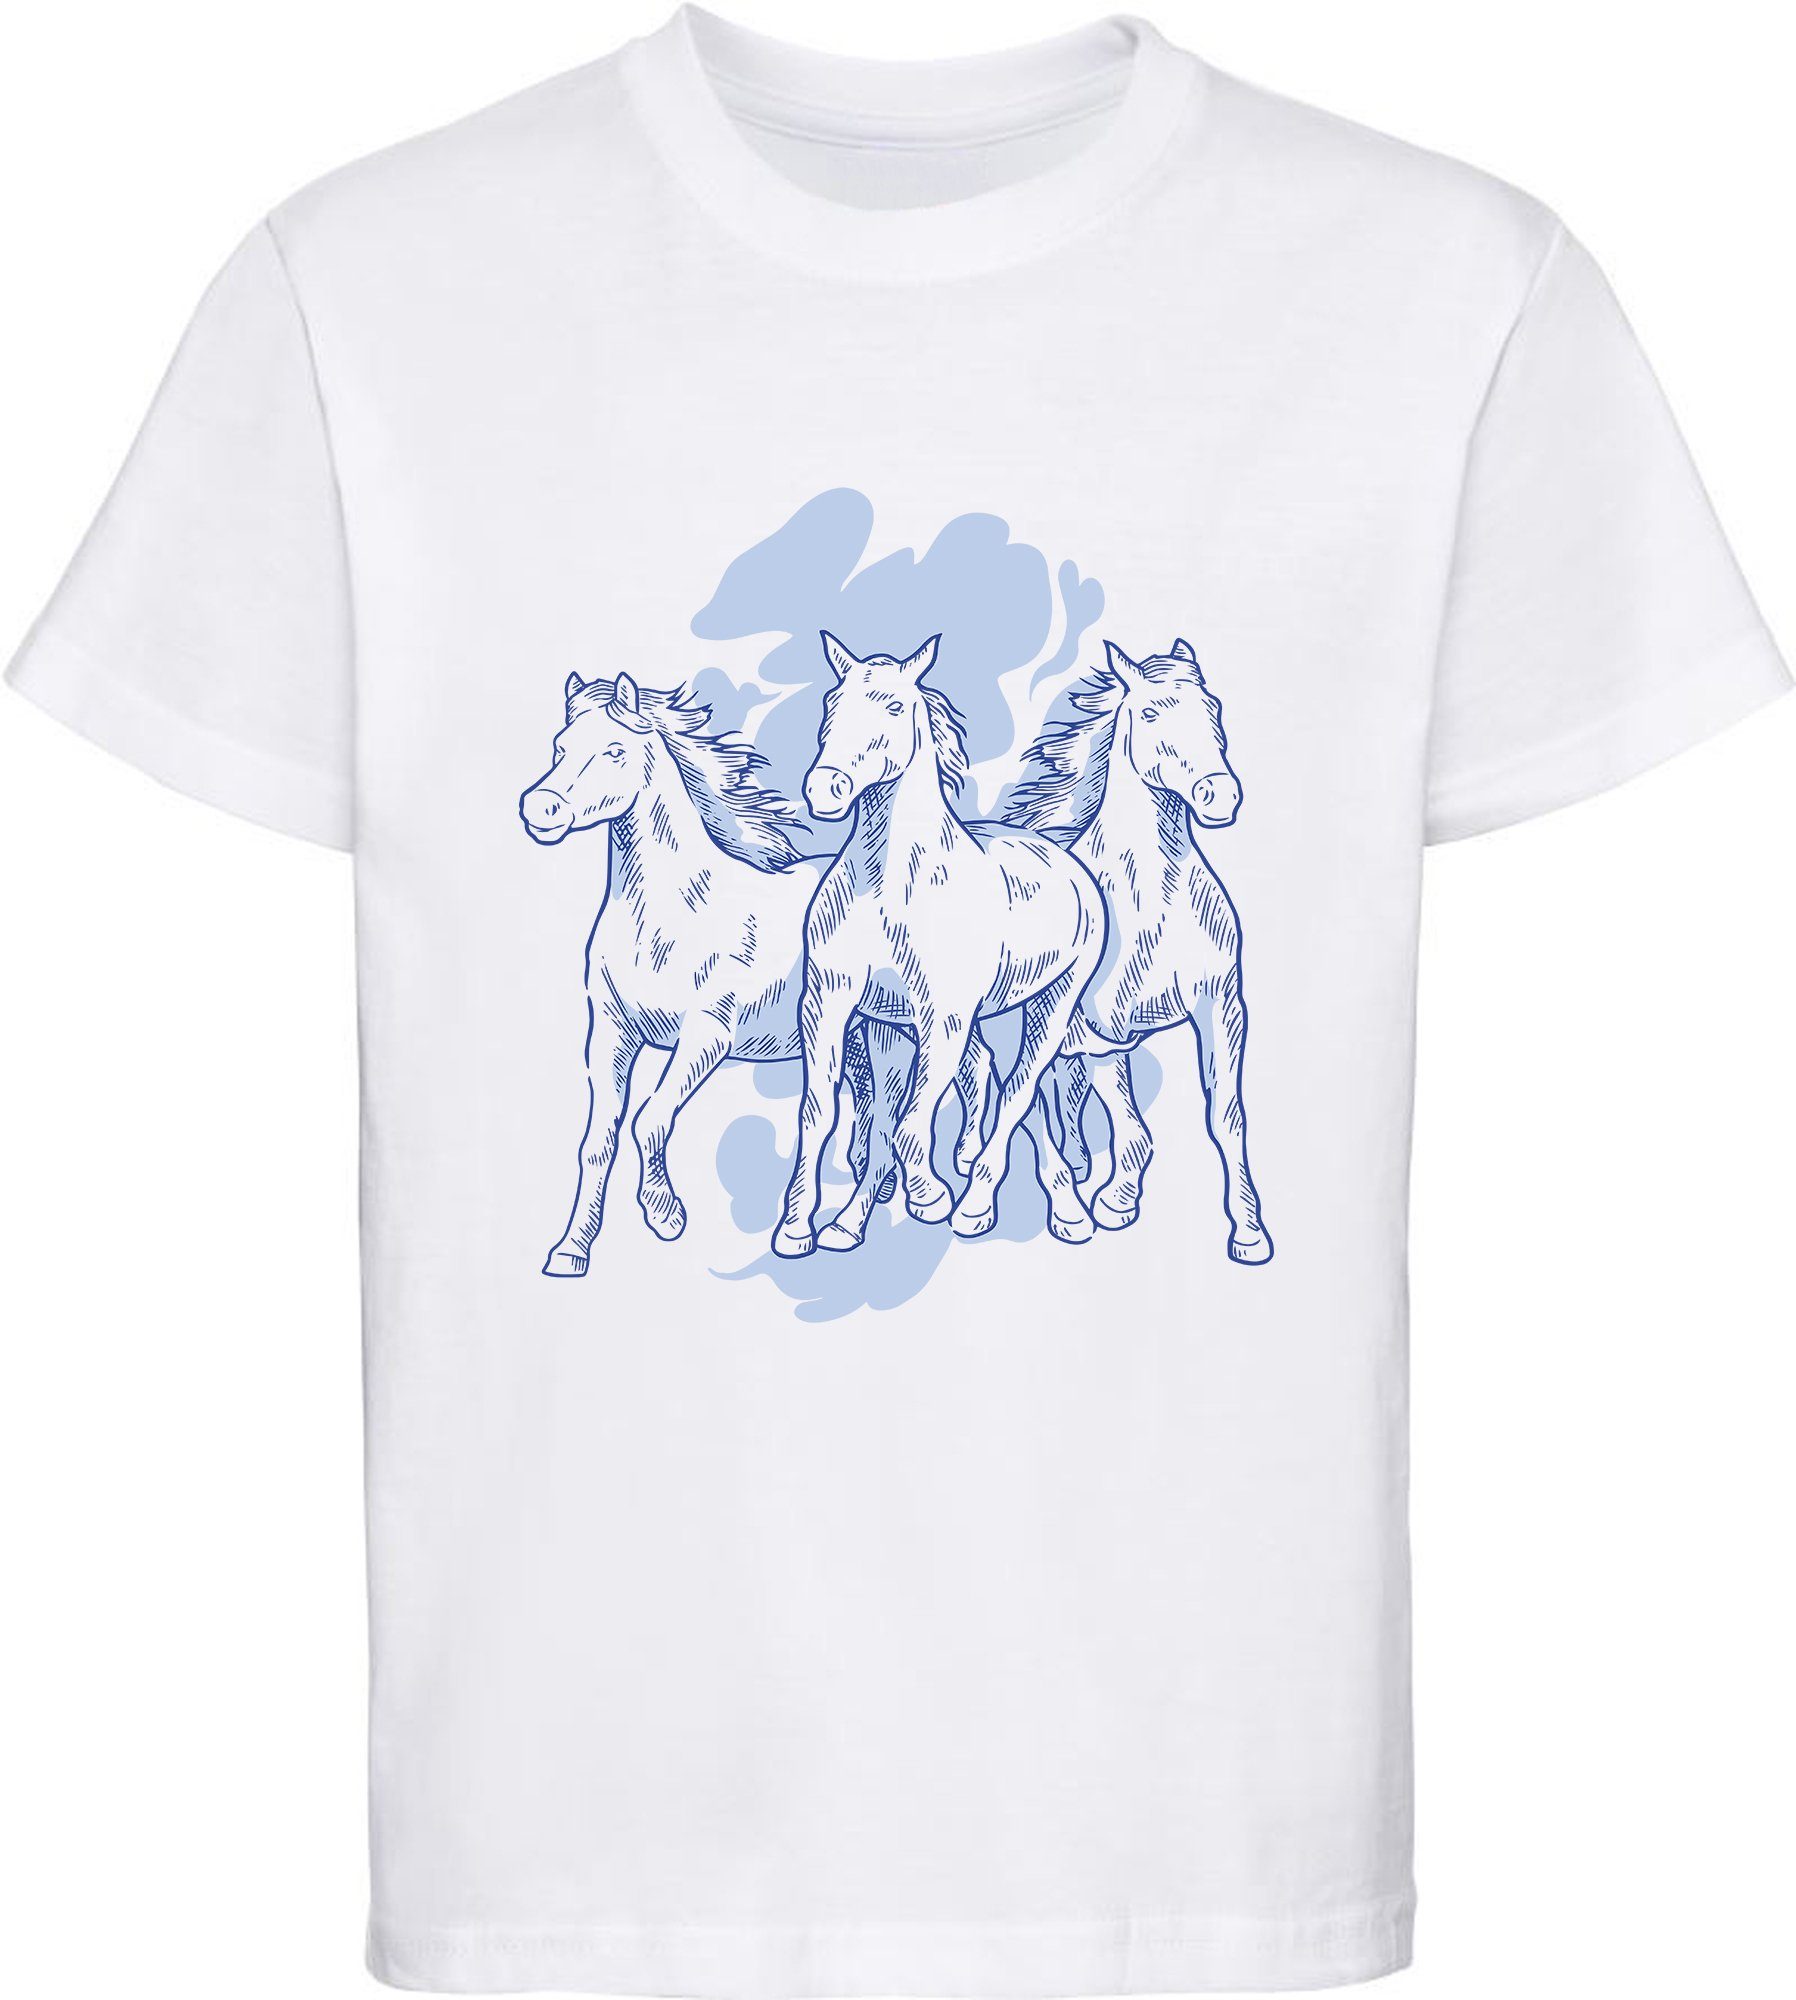 MyDesign24 Print-Shirt bedrucktes Mädchen T-Shirt mit 3 Pferden Baumwollshirt mit Aufdruck, i141 weiss